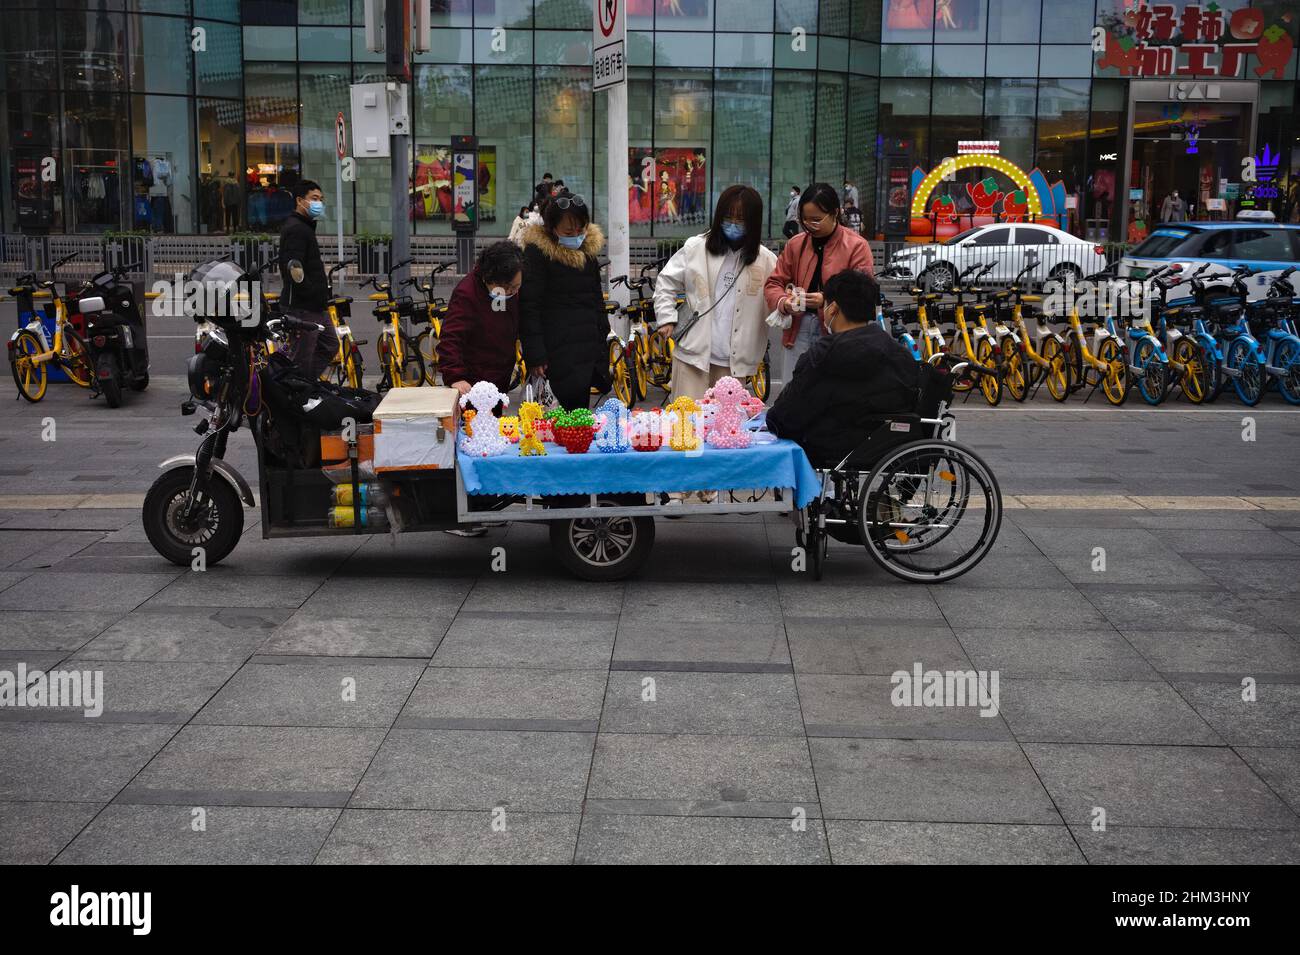 Interazione tra il venditore di sedie a rotelle e i clienti a Shenzhen, Cina Foto Stock